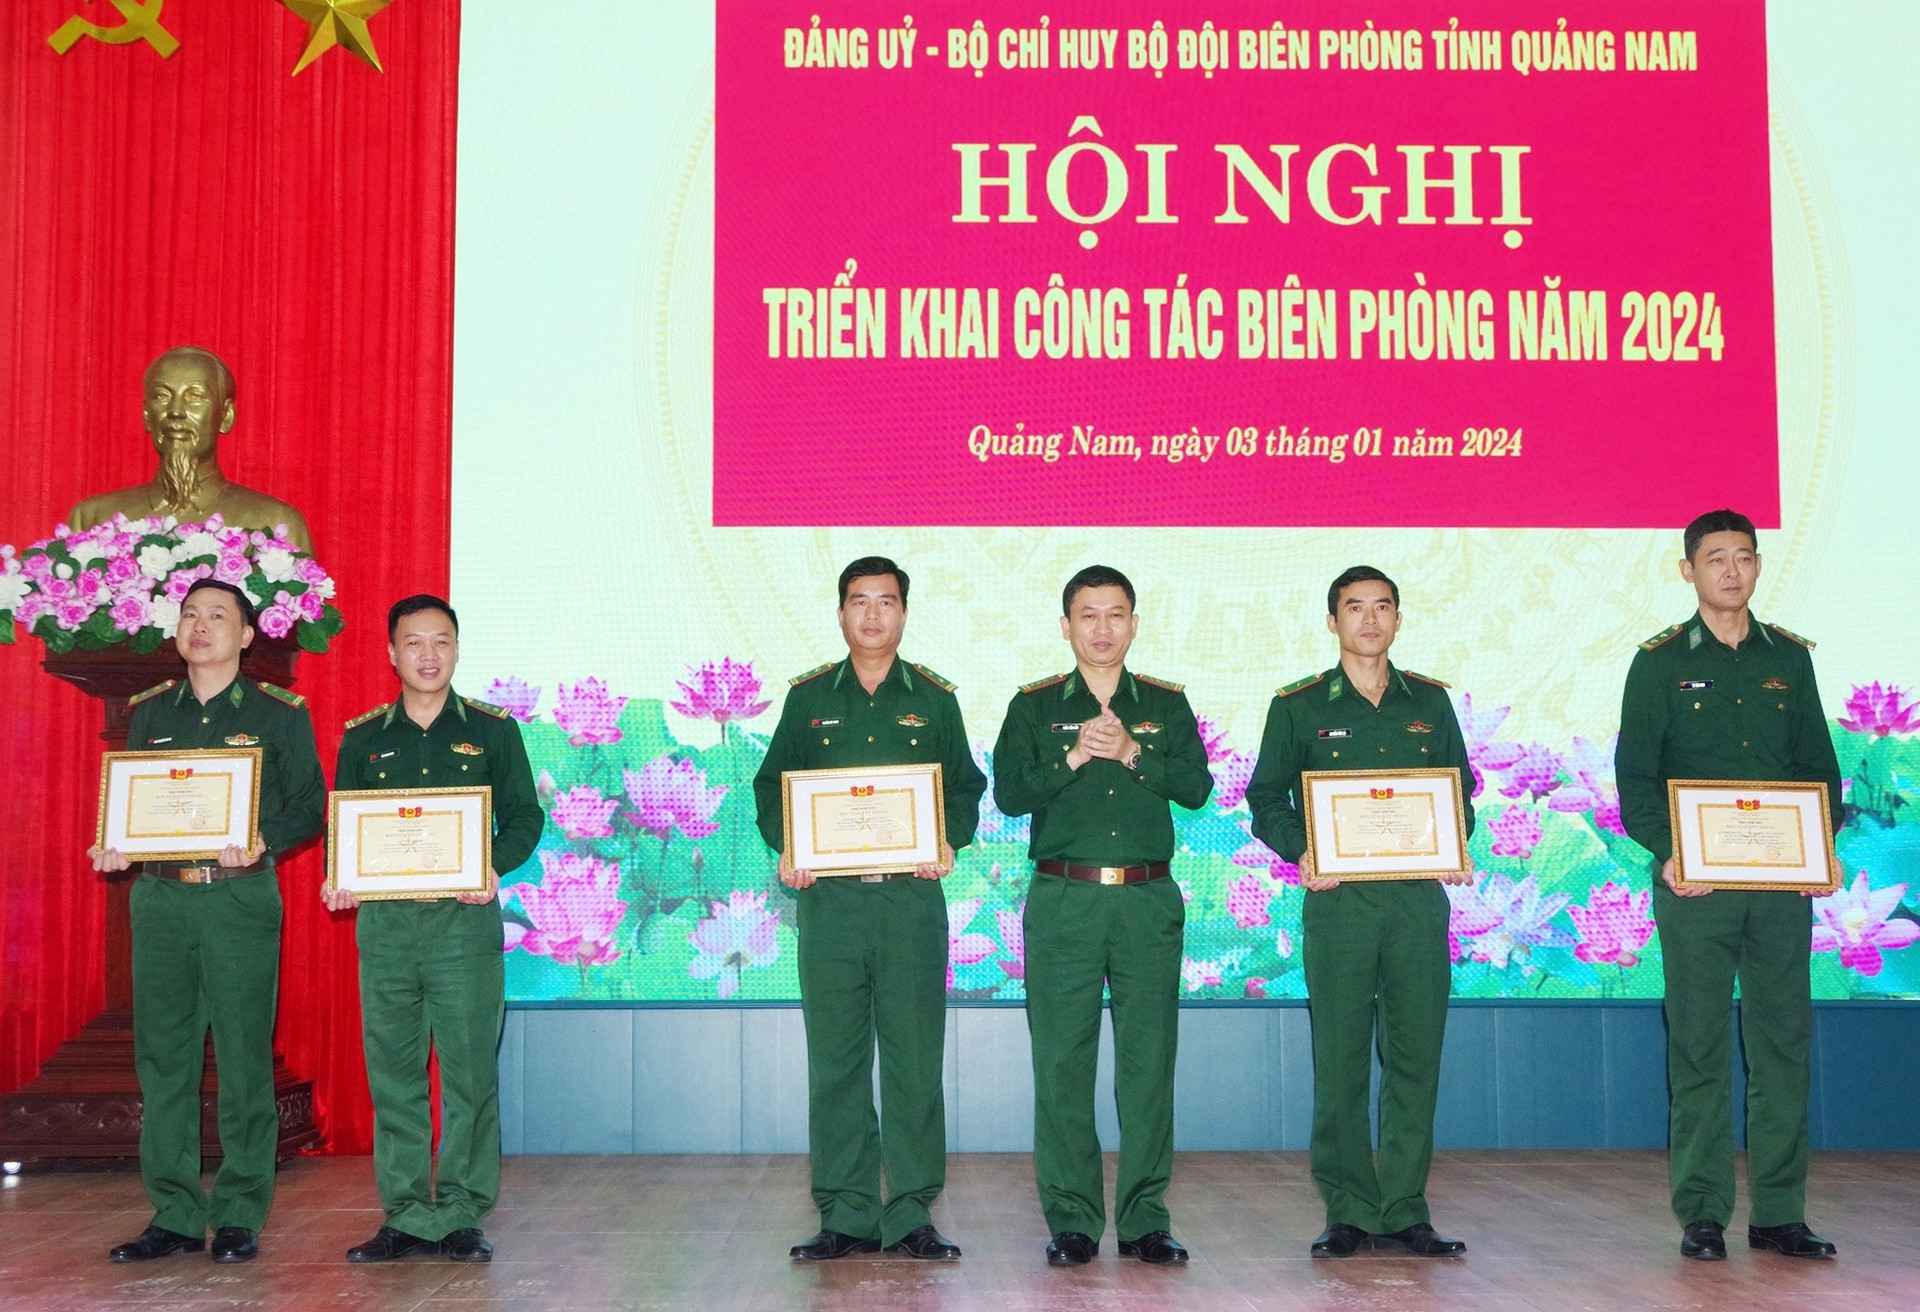 Đại tá Trần Tiến Hiền - Chỉ huy trưởng BĐBP tỉnh trao bằng khen của Bộ Tư lệnh BĐBP cho các tập thể, cá nhân. Ảnh: HUỲNH CHÍN